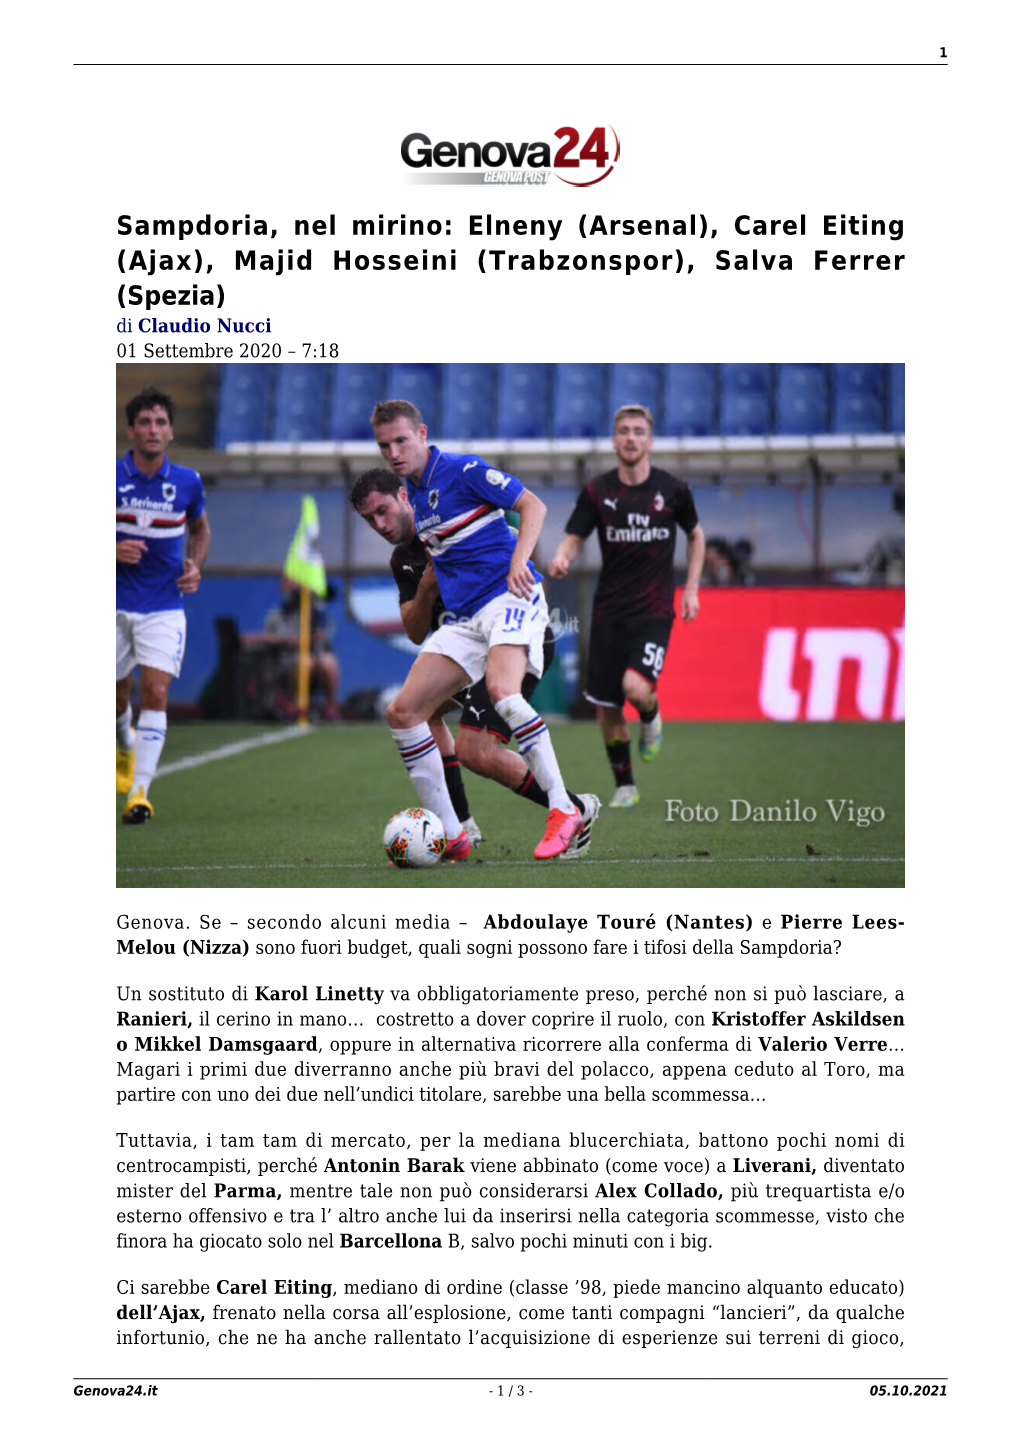 (Arsenal), Carel Eiting (Ajax), Majid Hosseini (Trabzonspor), Salva Ferrer (Spezia) Di Claudio Nucci 01 Settembre 2020 – 7:18